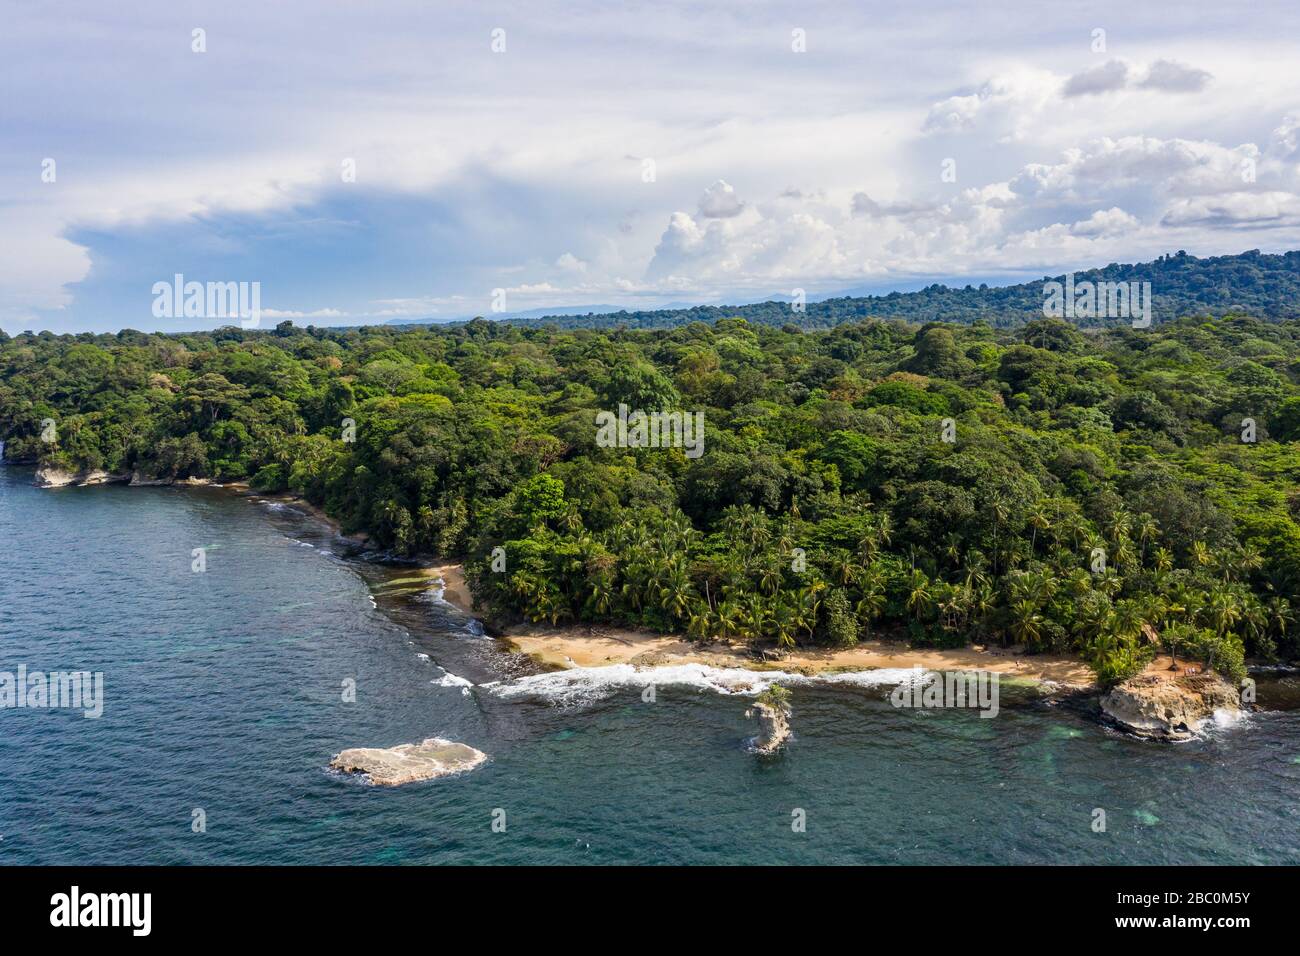 Vue aérienne de la côte des Caraïbes de la réserve naturelle de Gandoca Manzanillo dans la province de Limón, dans l'est du Costa Rica. Banque D'Images